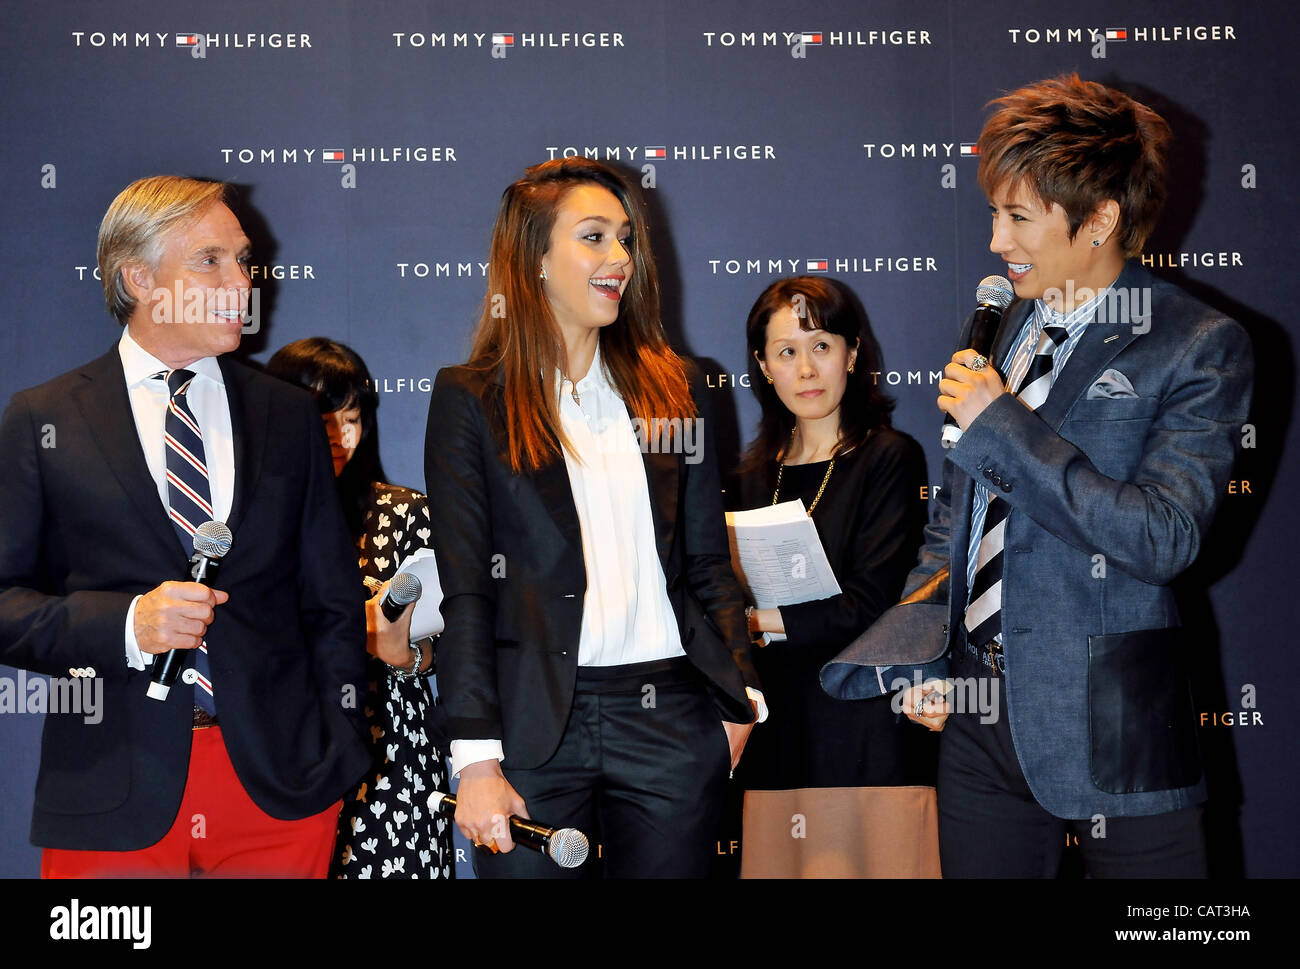 Tommy Hilfiger, Jessica Alba, Apr 16, 2012 : (L-R)Fashion designer Tommy  Hilfiger, actress Jessica Alba and